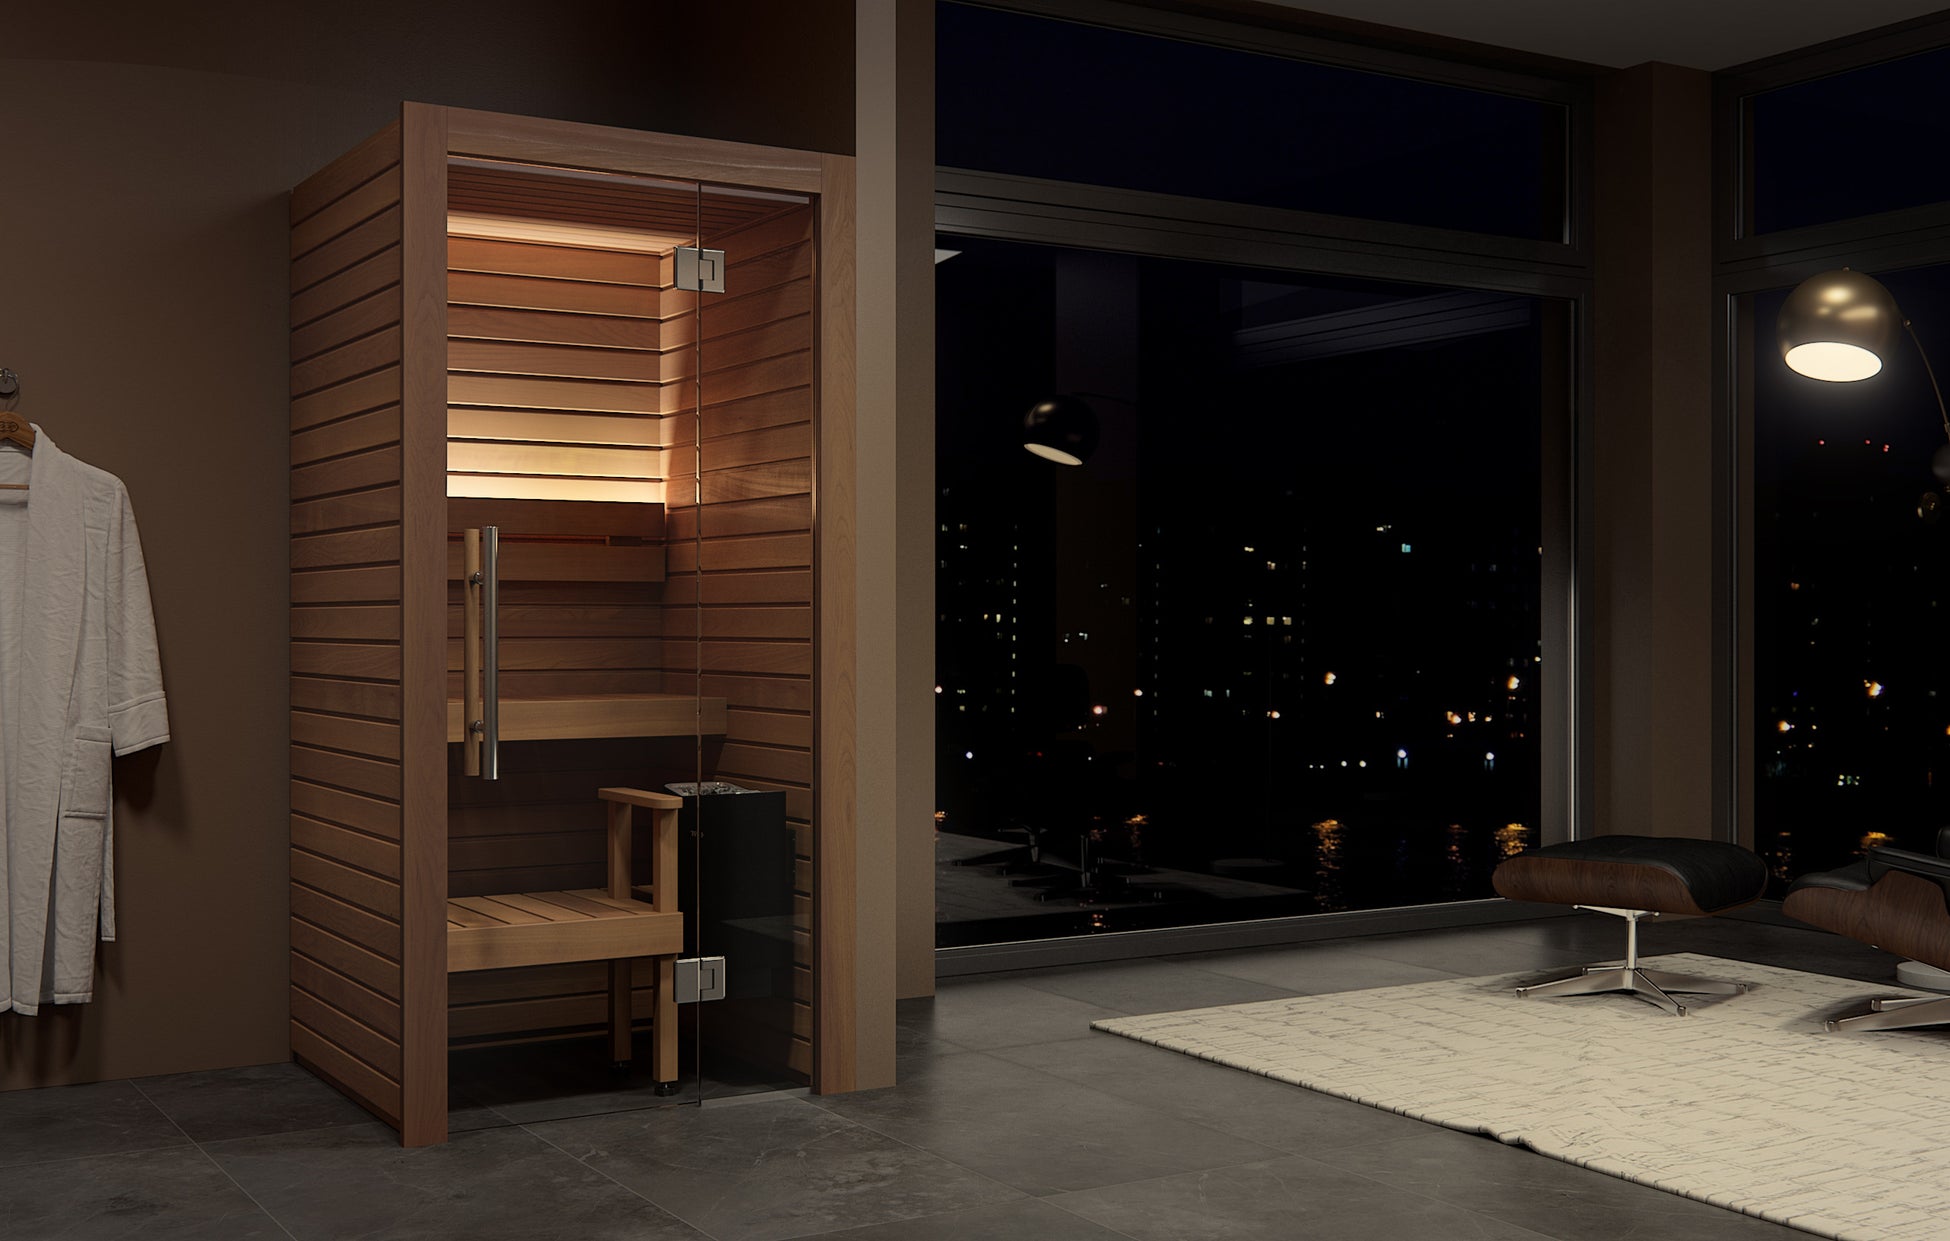 【totonoü】“家具のように置けるサウナ” 「Cala Mini」の販売を開始 - 都心のマンション・賃貸向け、家庭用サウナの新製品 -のサブ画像5_家庭用サウナをリビングに設置したイメージ